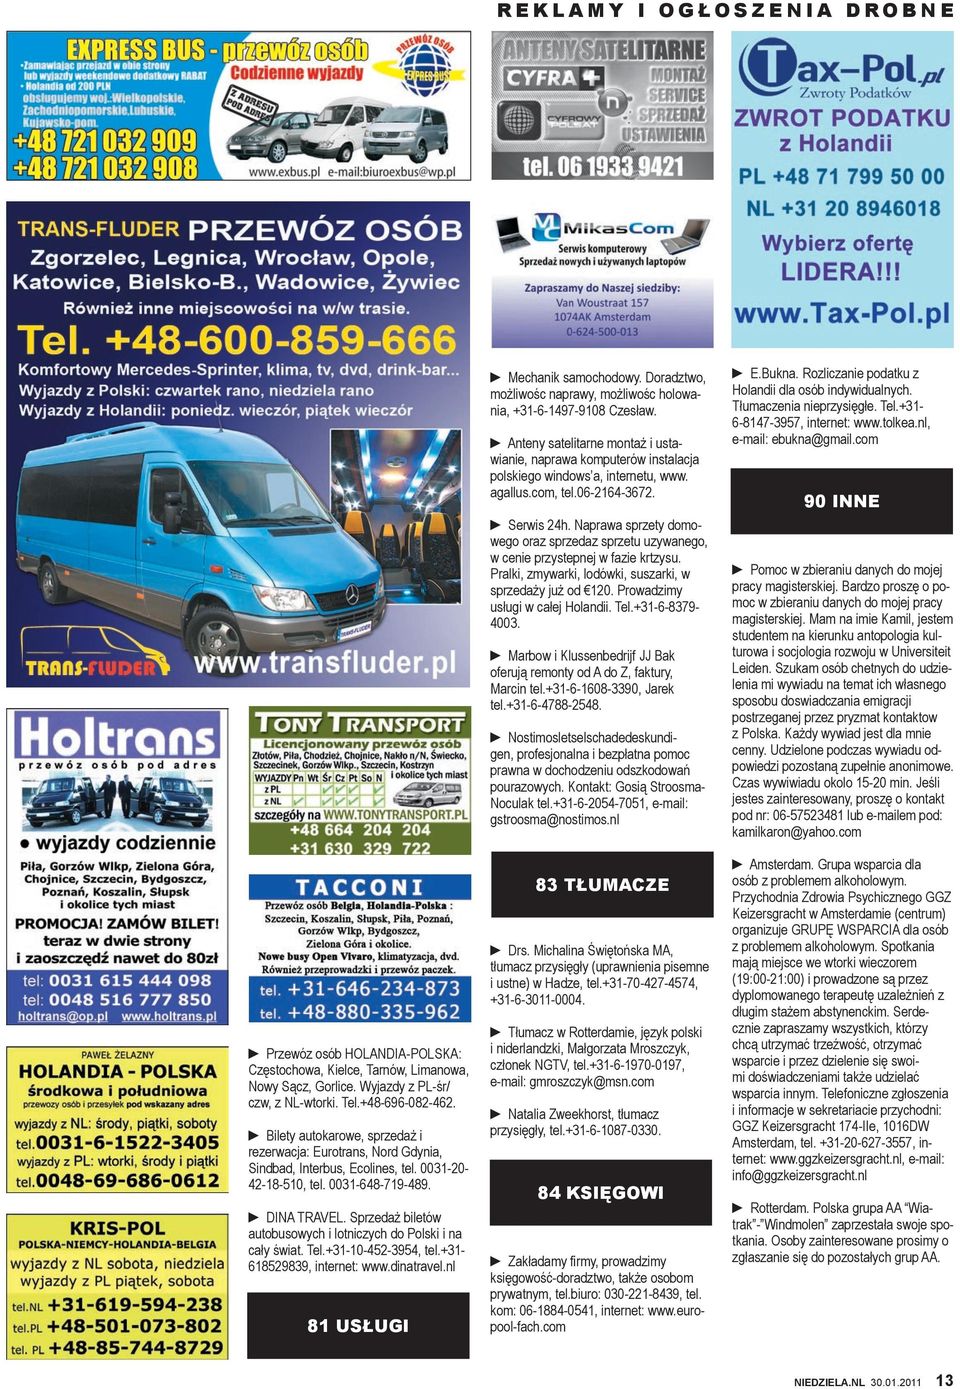 Sprzedaż biletów autobusowych i lotniczych do Polski i na cały świat. Tel.+31-10-452-3954, tel.+31-618529839, internet: www.dinatravel.nl 81 USŁUGI Mechanik samochodowy.